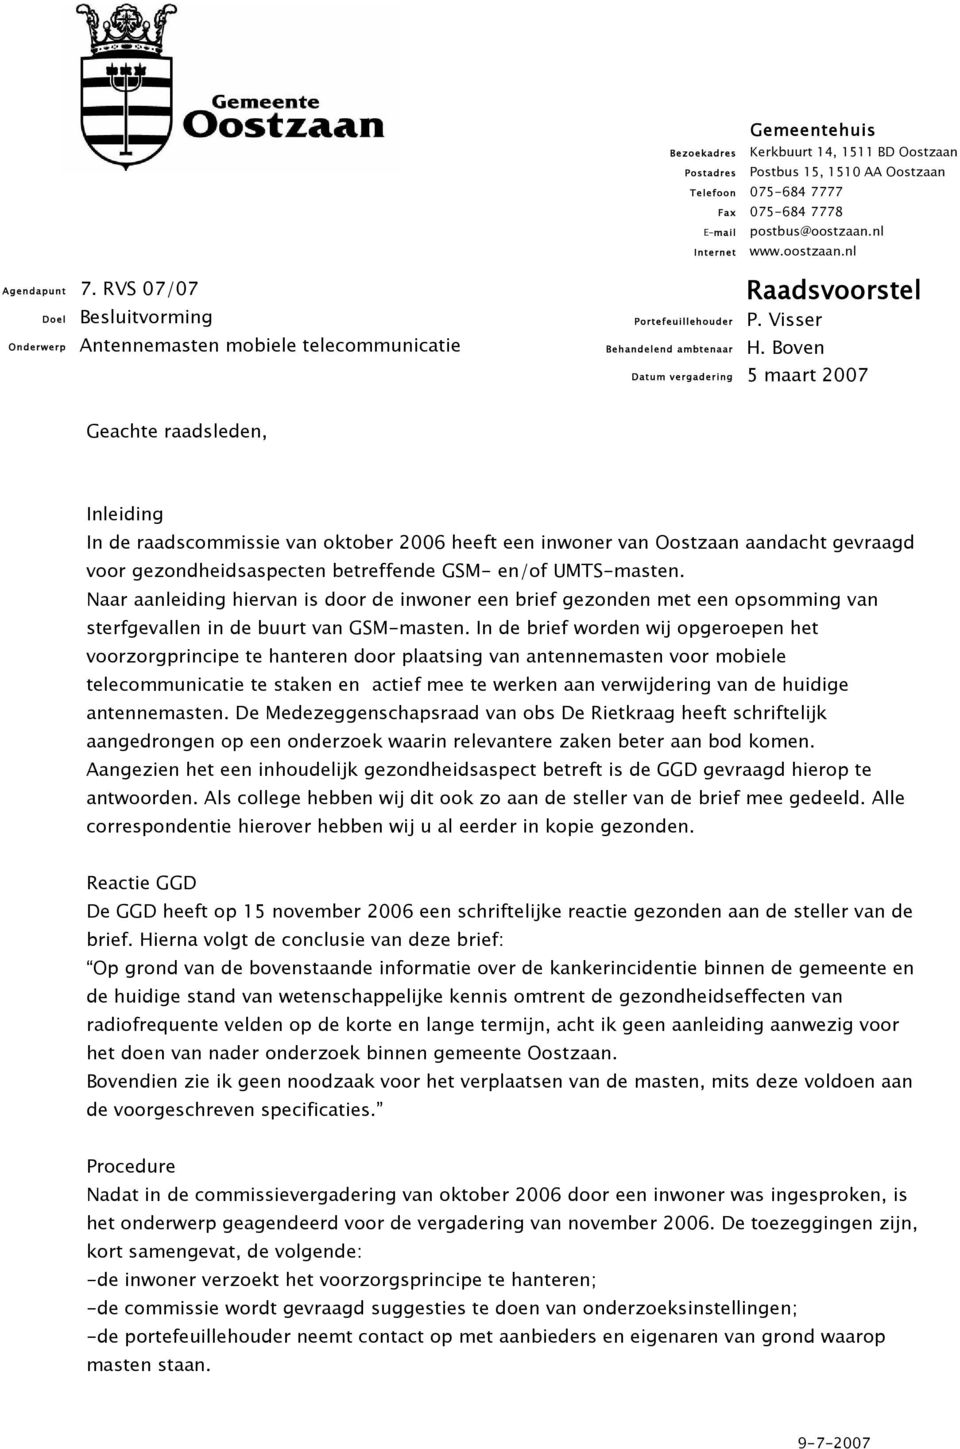 E-mail Internet Portefeuillehouder Behandelend ambtenaar Datum vergadering postbus@oostzaan.nl www.oostzaan.nl Raadsvoorstel P. Visser H.